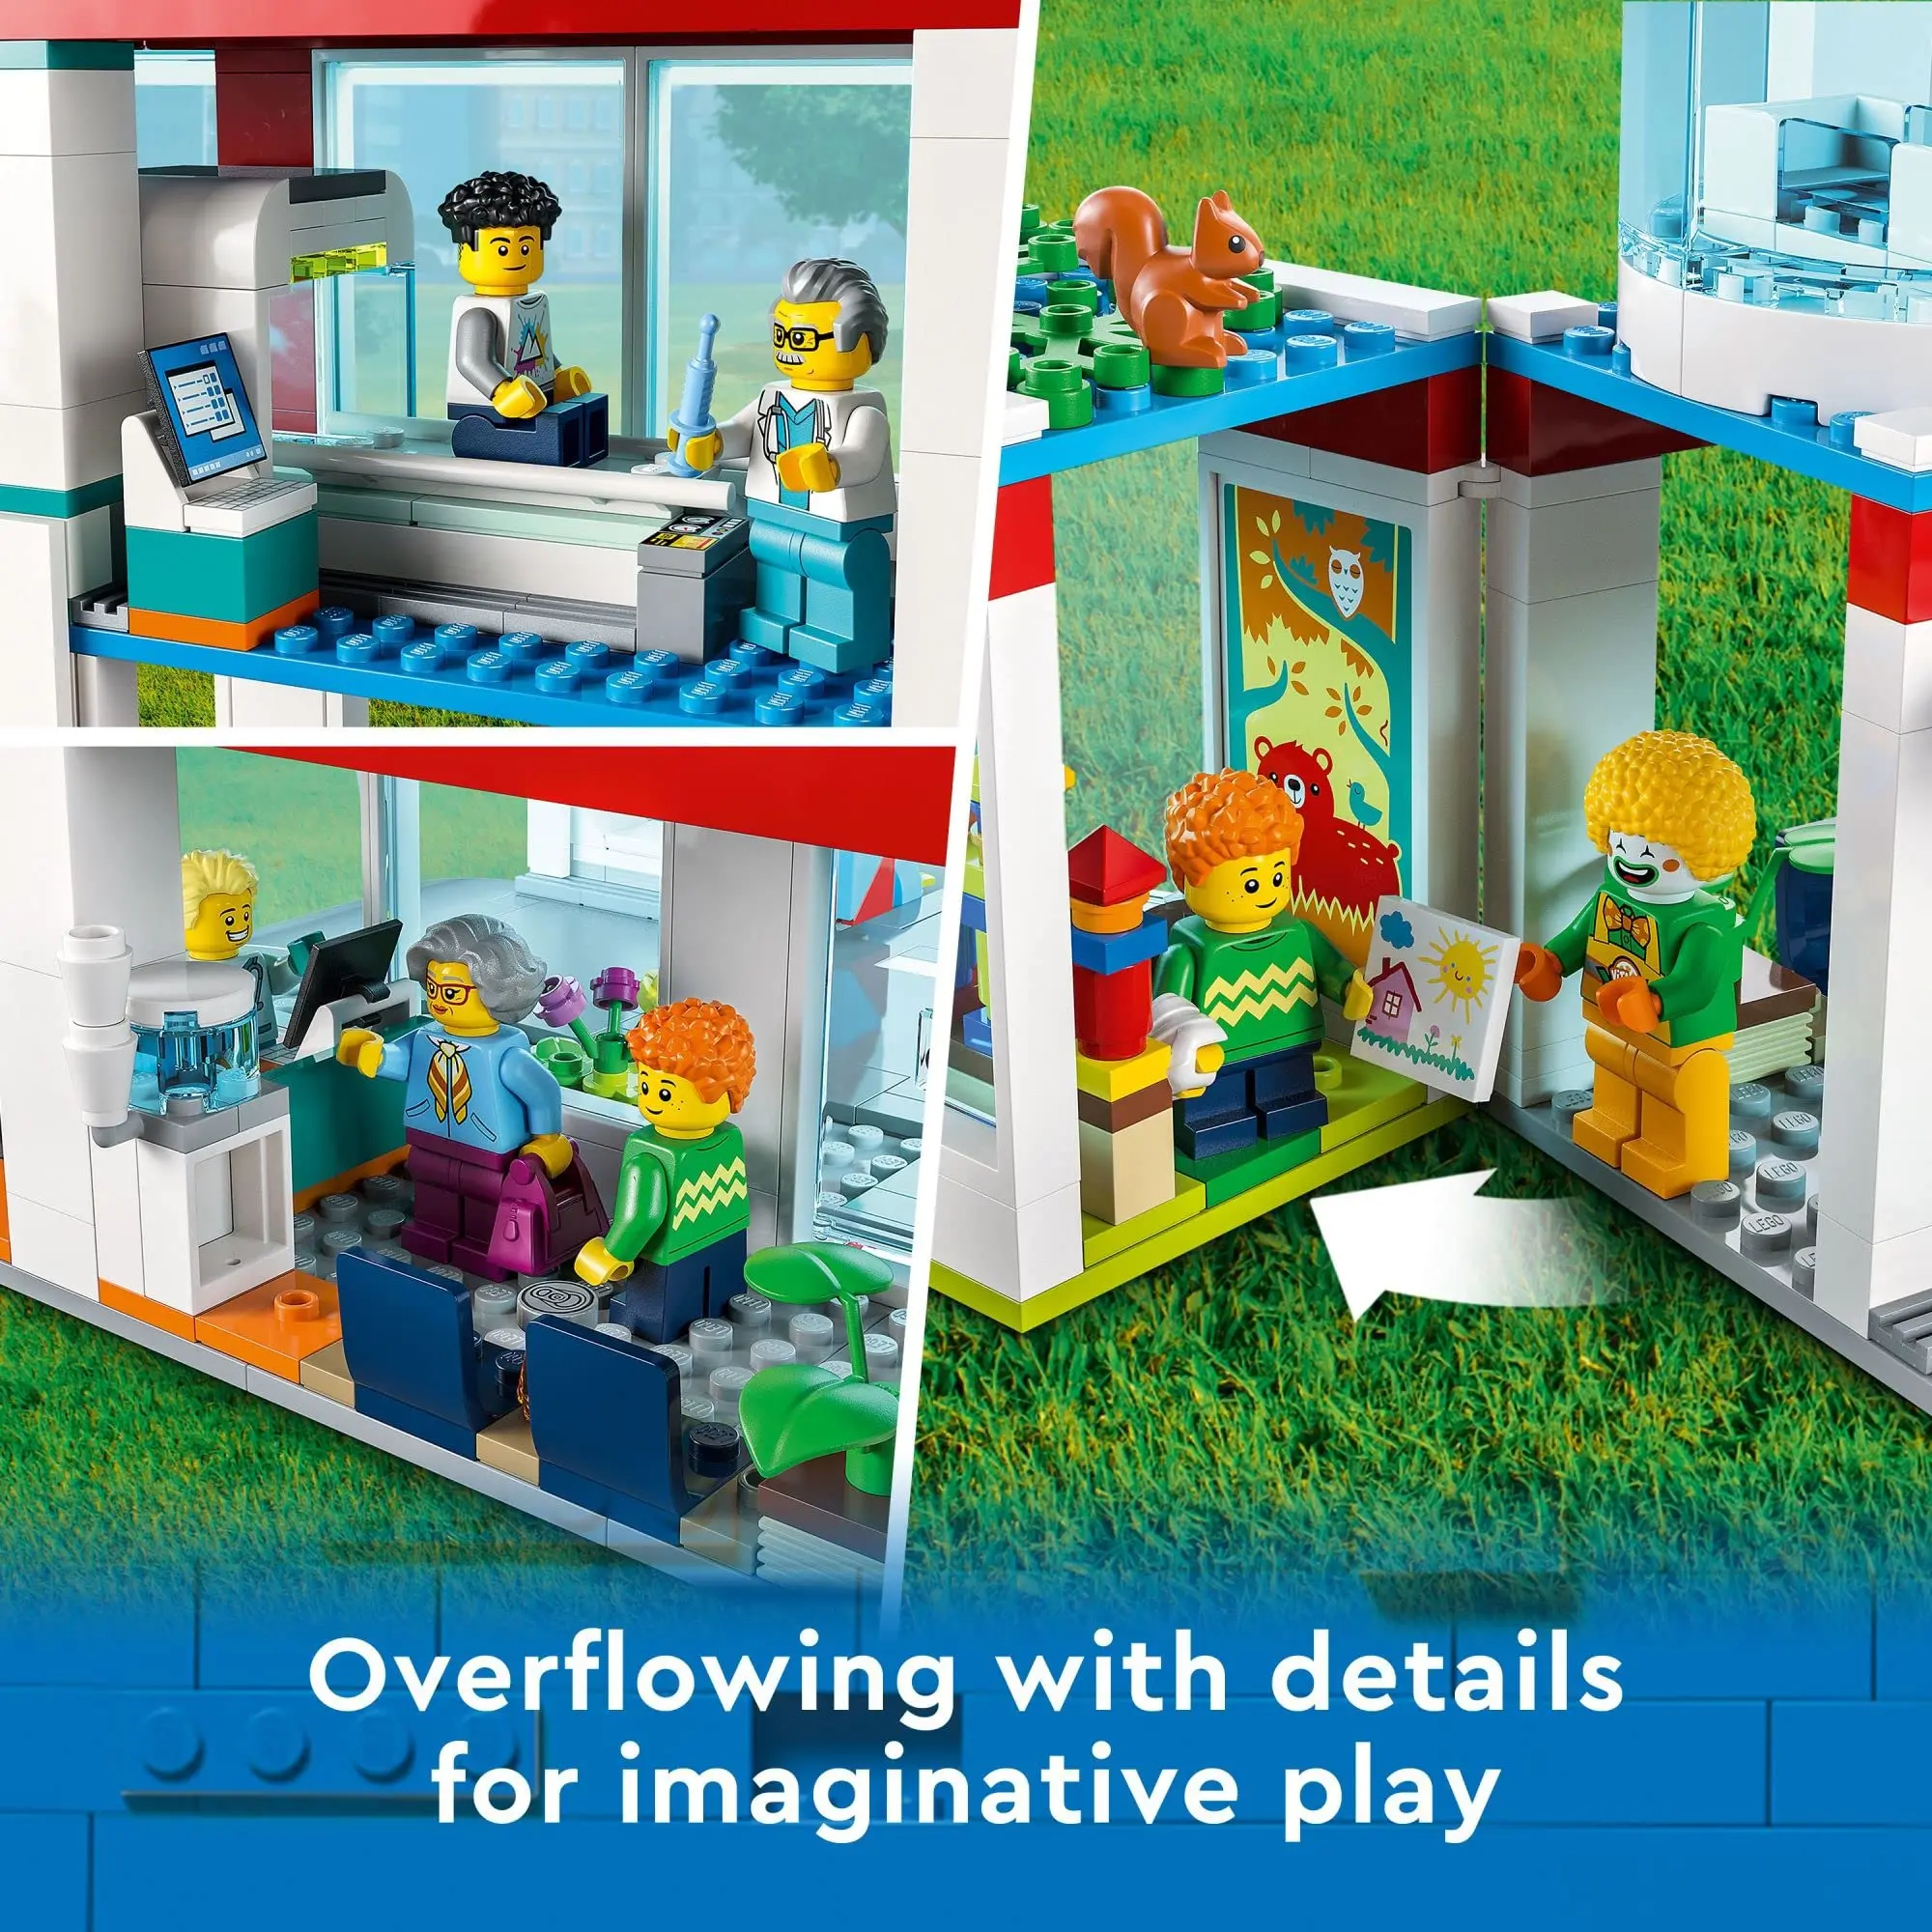 LEGO - Ville - 60330 - Ensemble de Jouets